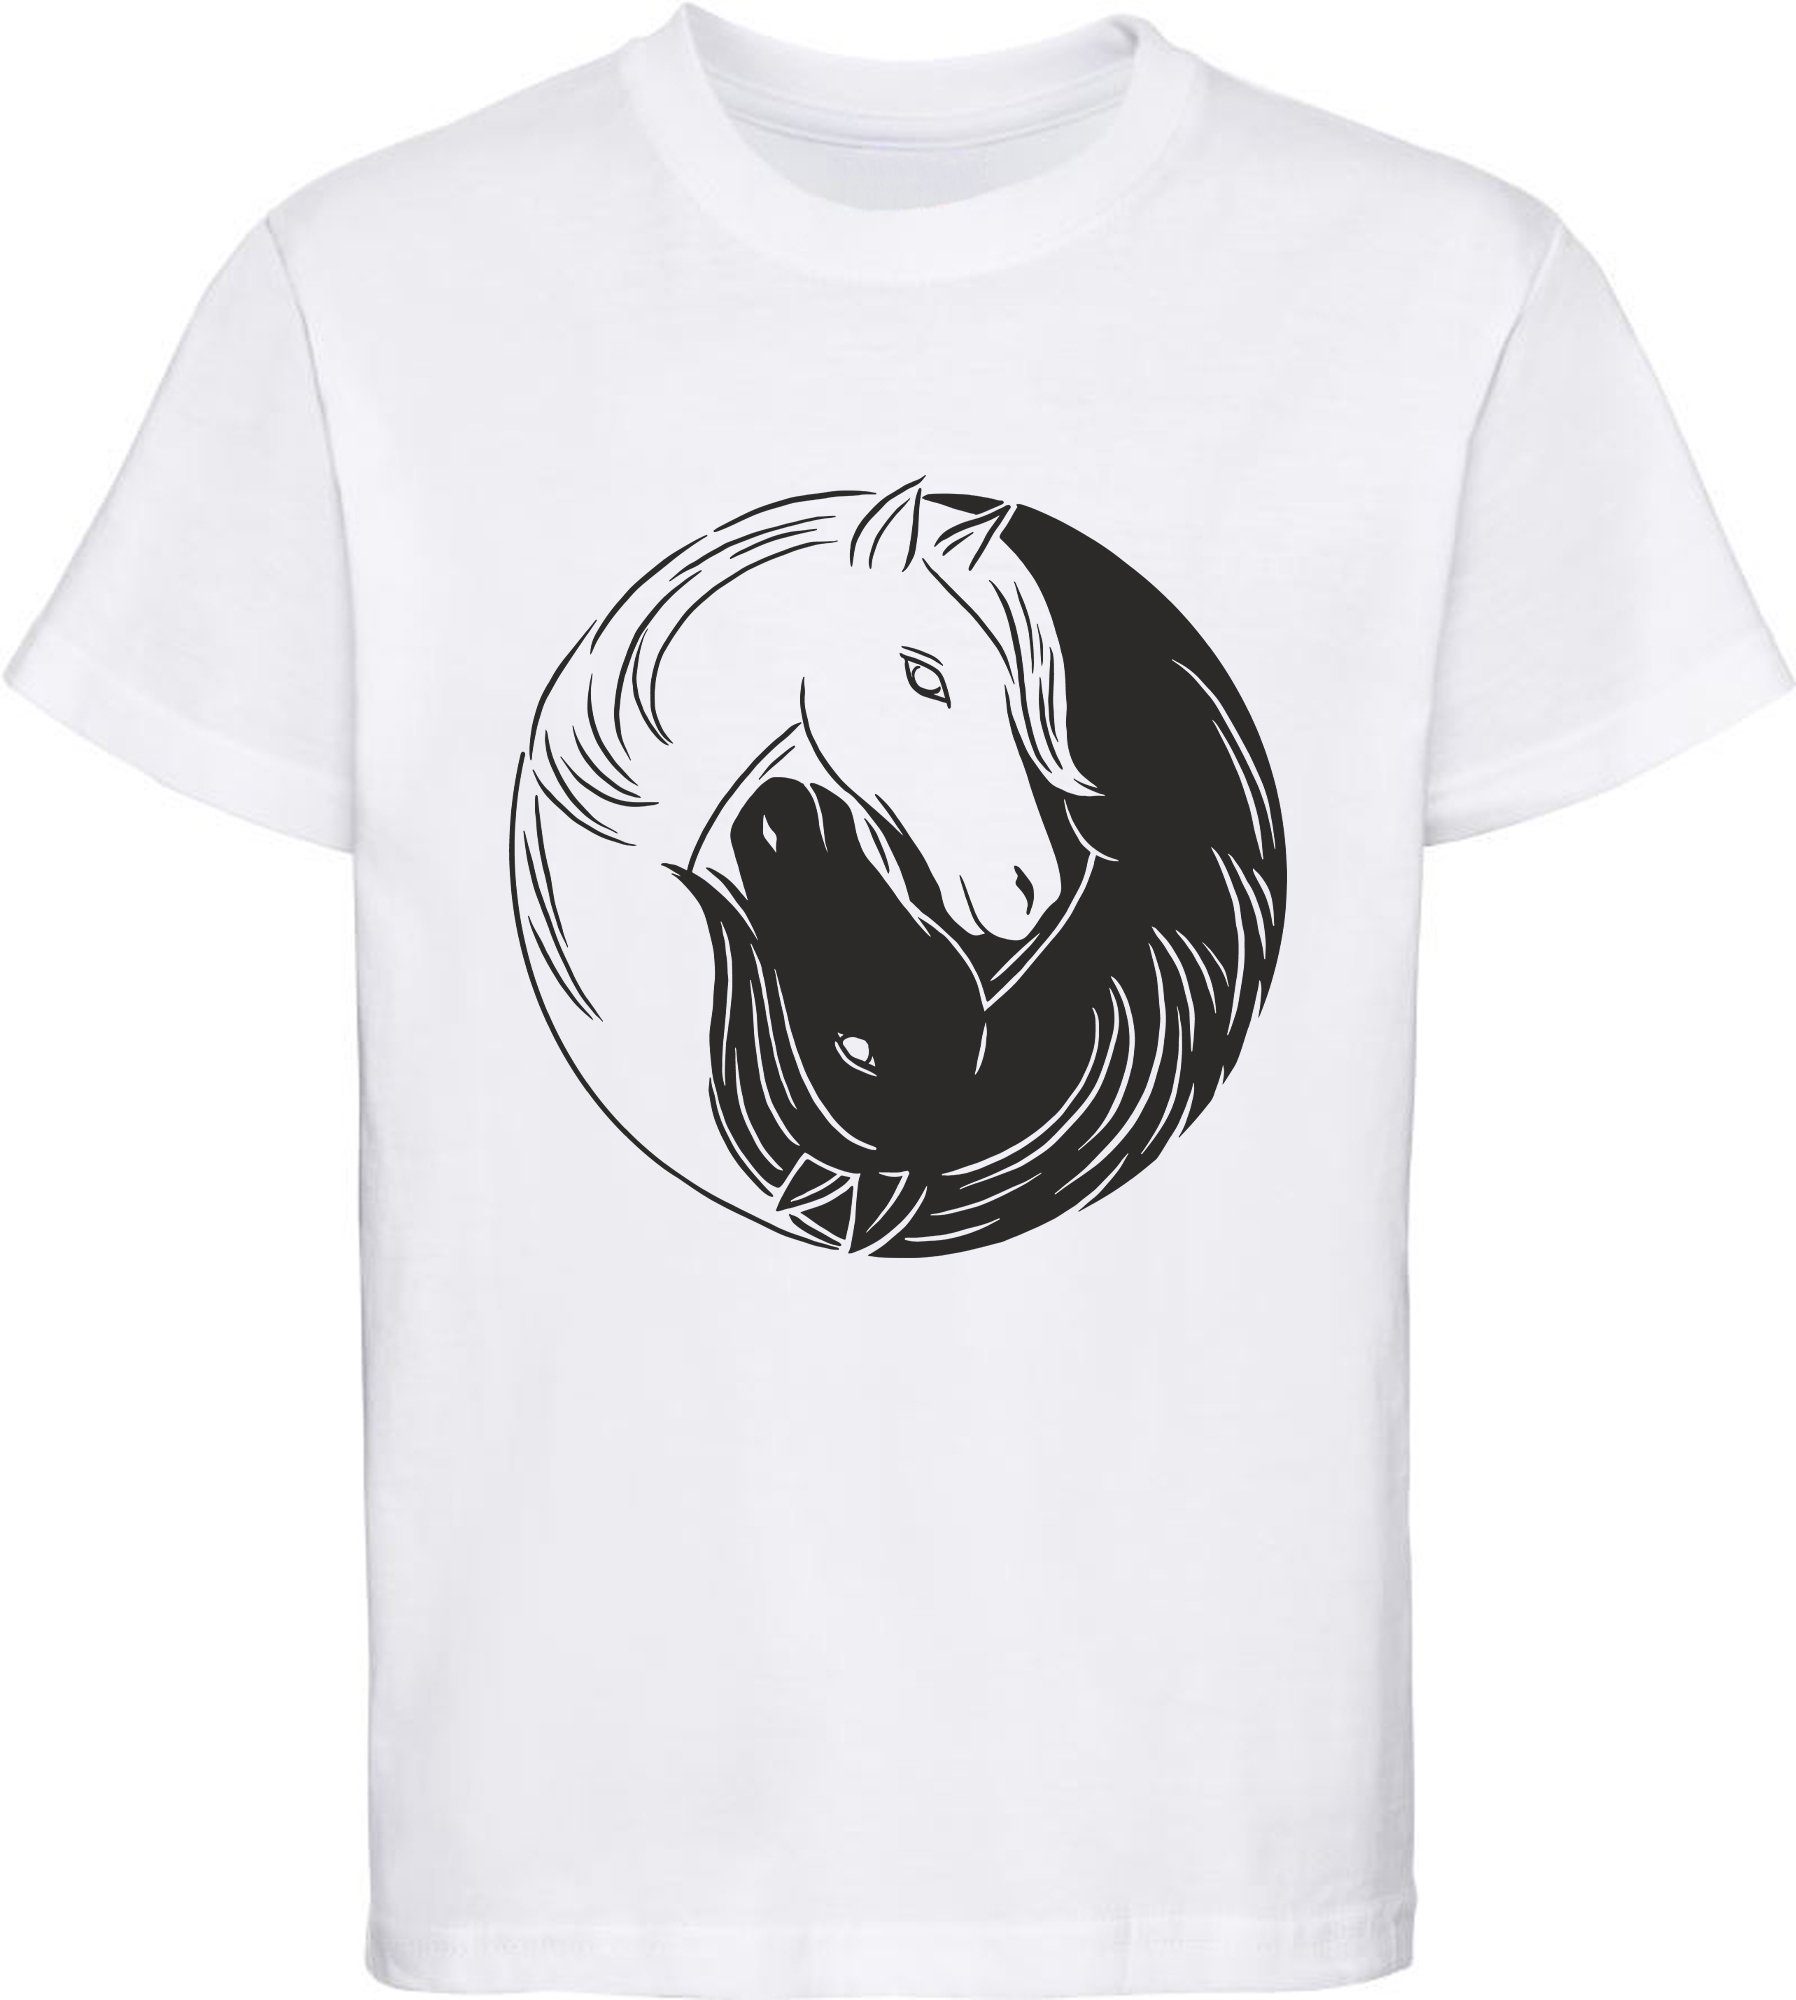 MyDesign24 Print-Shirt bedrucktes Mädchen T-Shirt Yin Yang Pferd Baumwollshirt mit Aufdruck, weiß, rot, rosa, i133 weiss